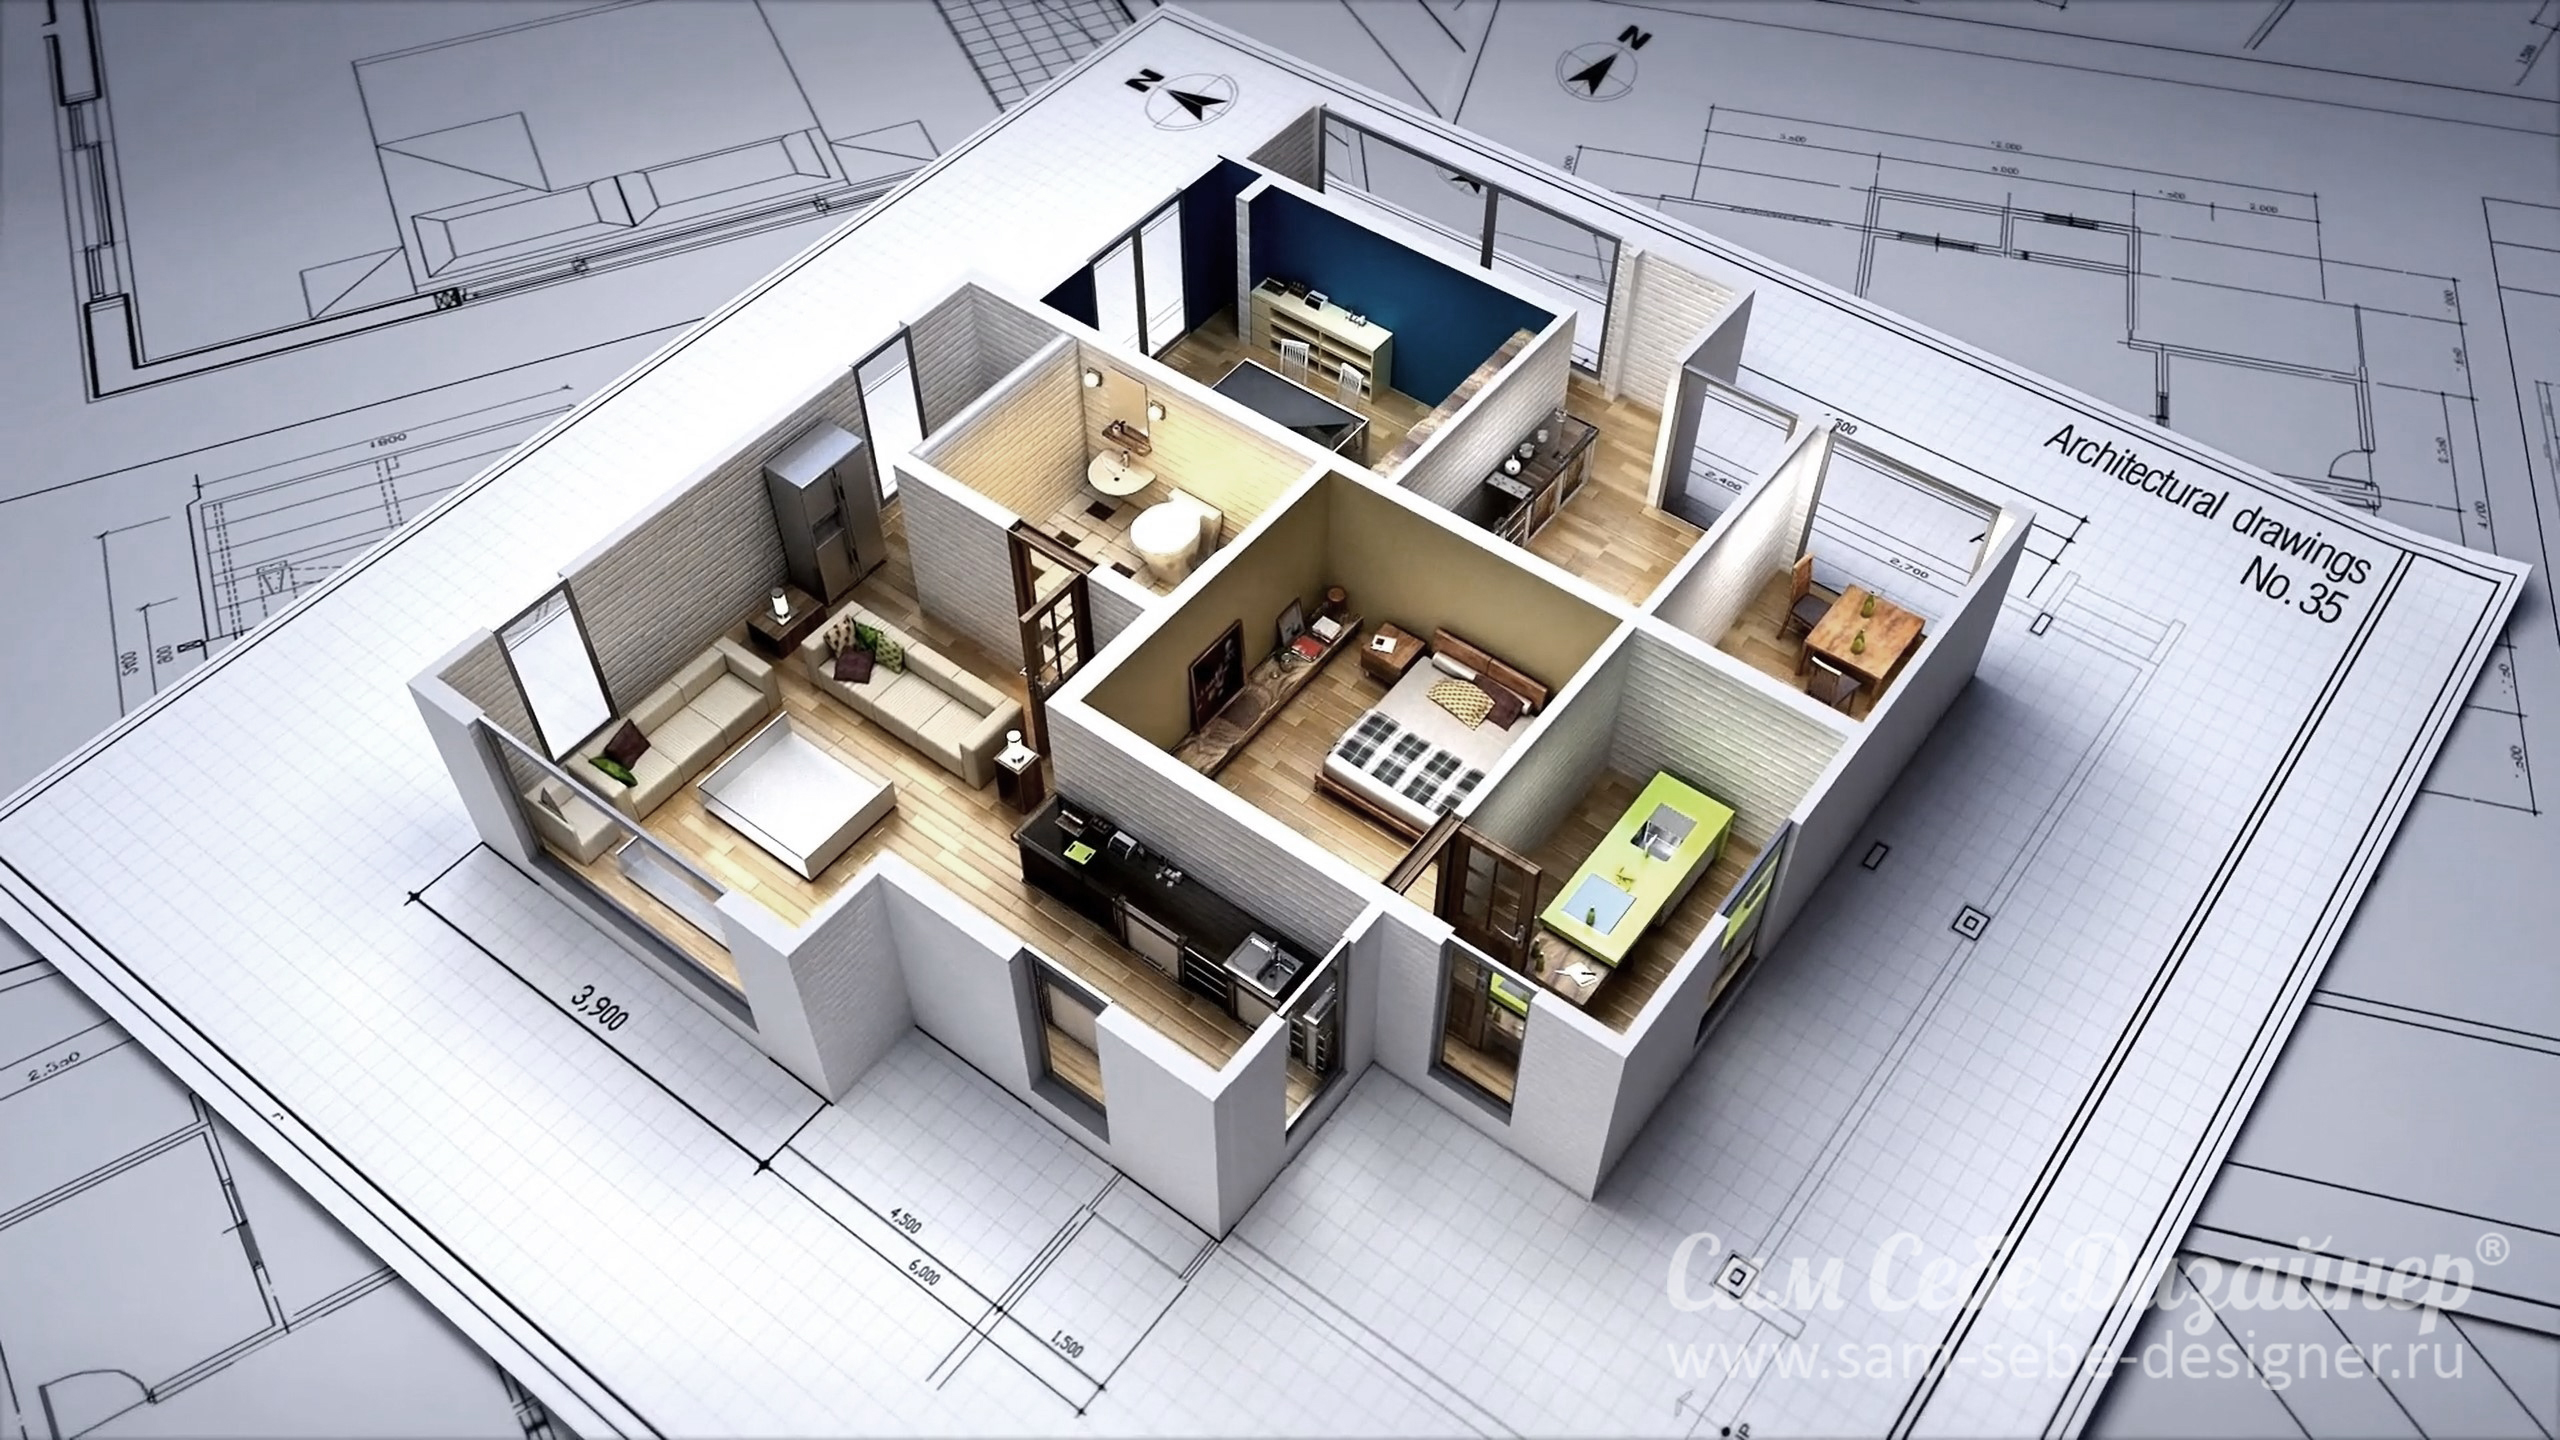 Жилое помещение представляет собой. Проектирование домов. Проектирование квартиры. Проектировка домов. 3d планировка.